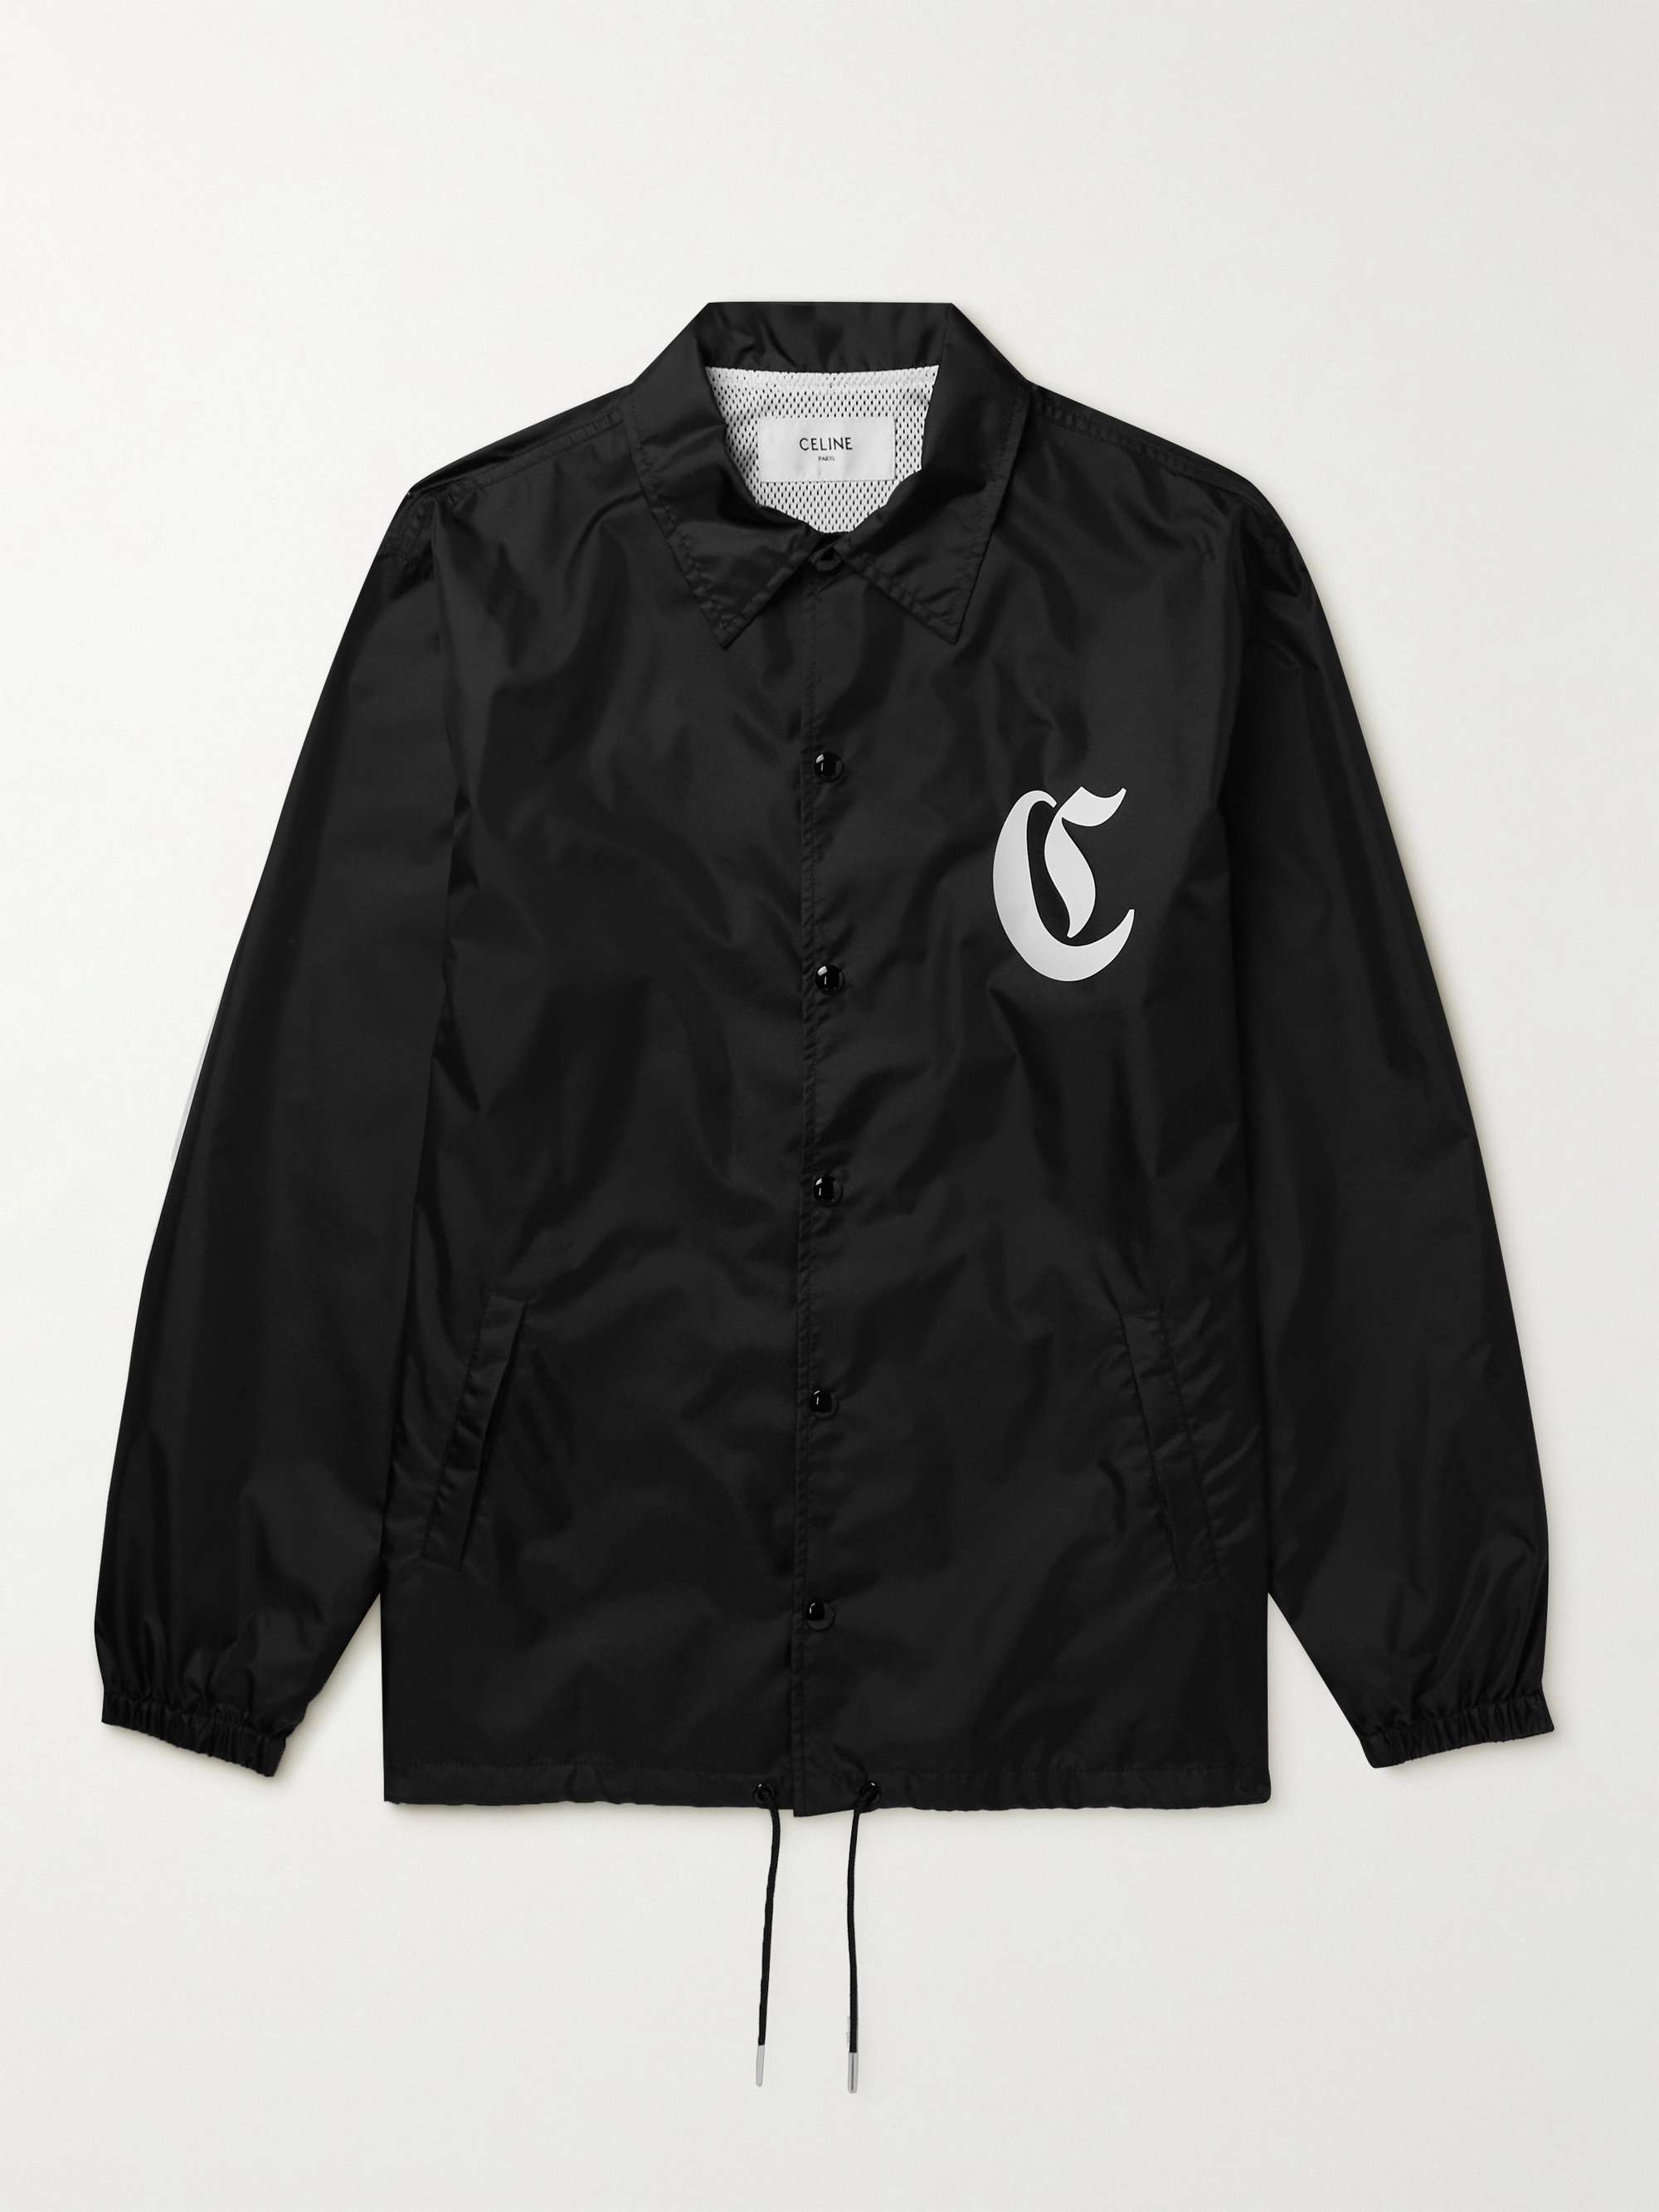 CELINE HOMME Teddy Logo-Appliquéd Cotton-Jersey Bomber Jacket for Men